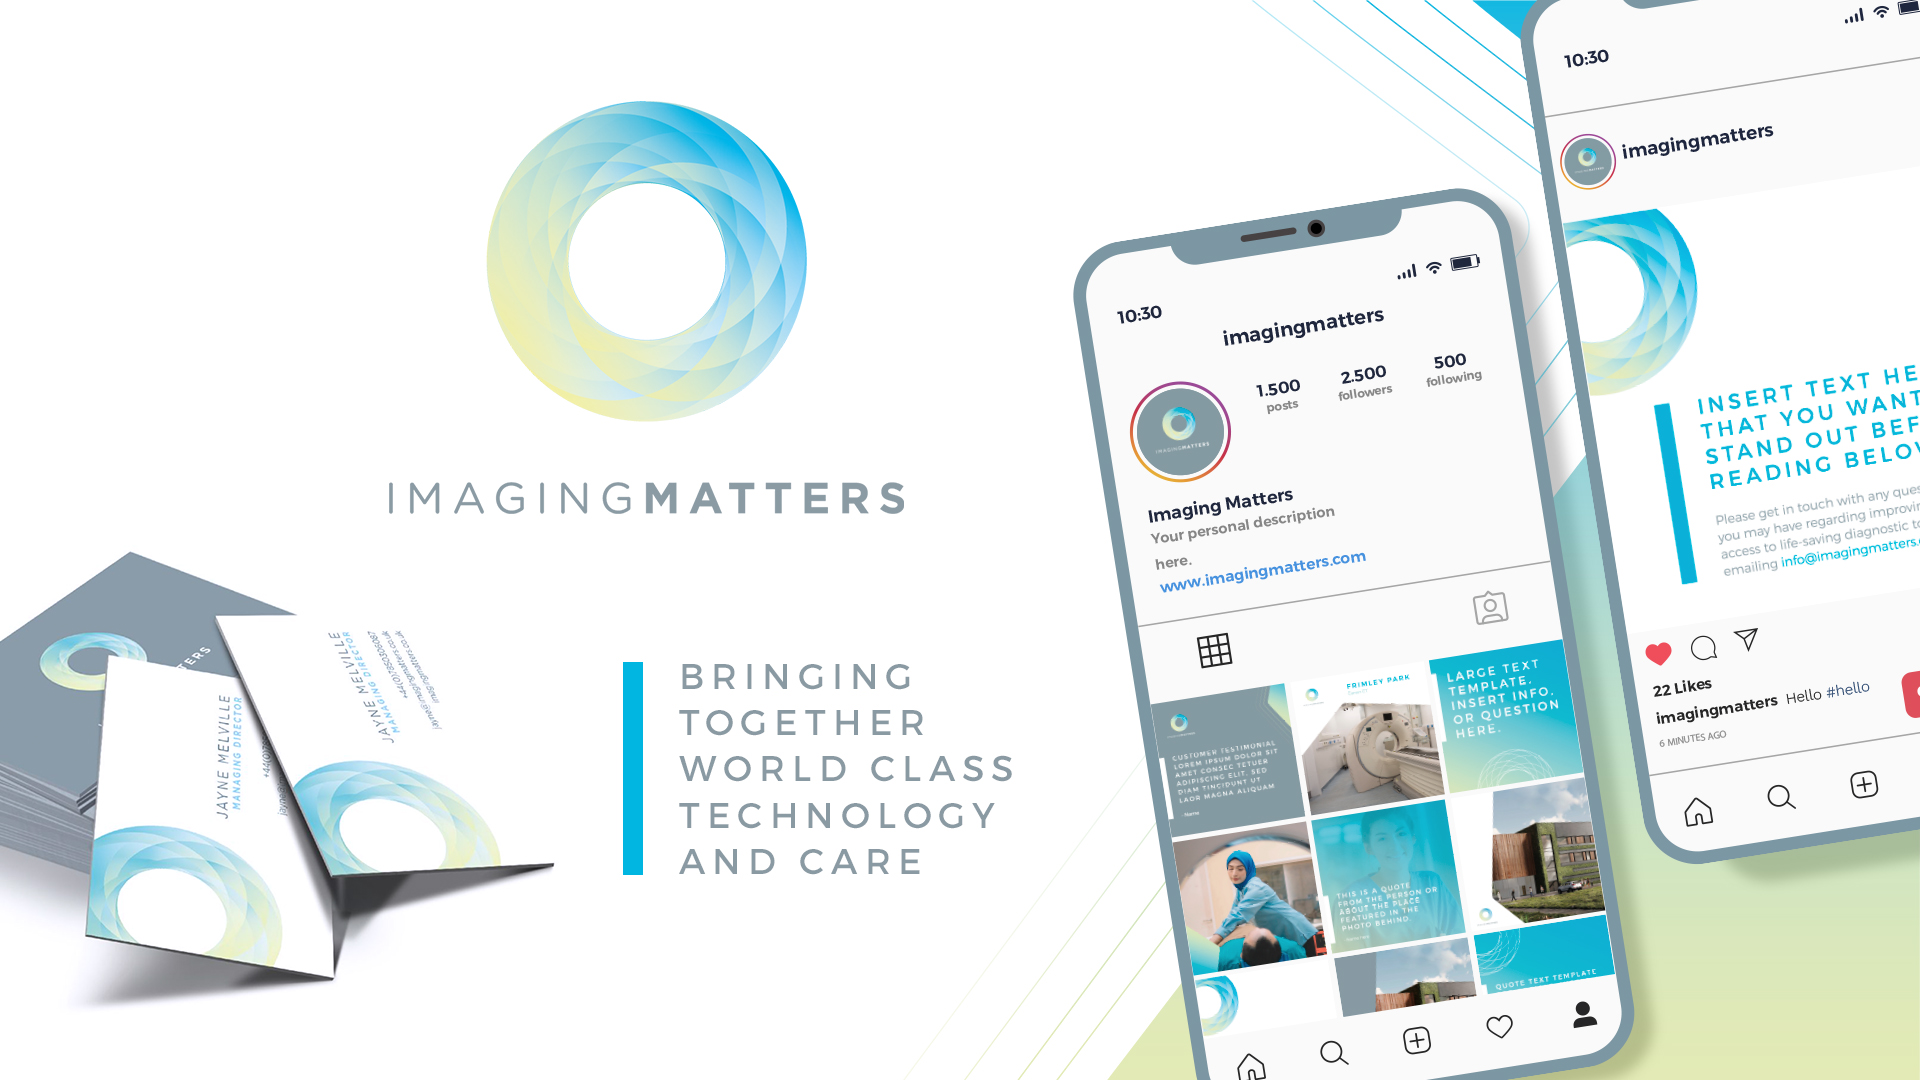 Imaging matters rebrand